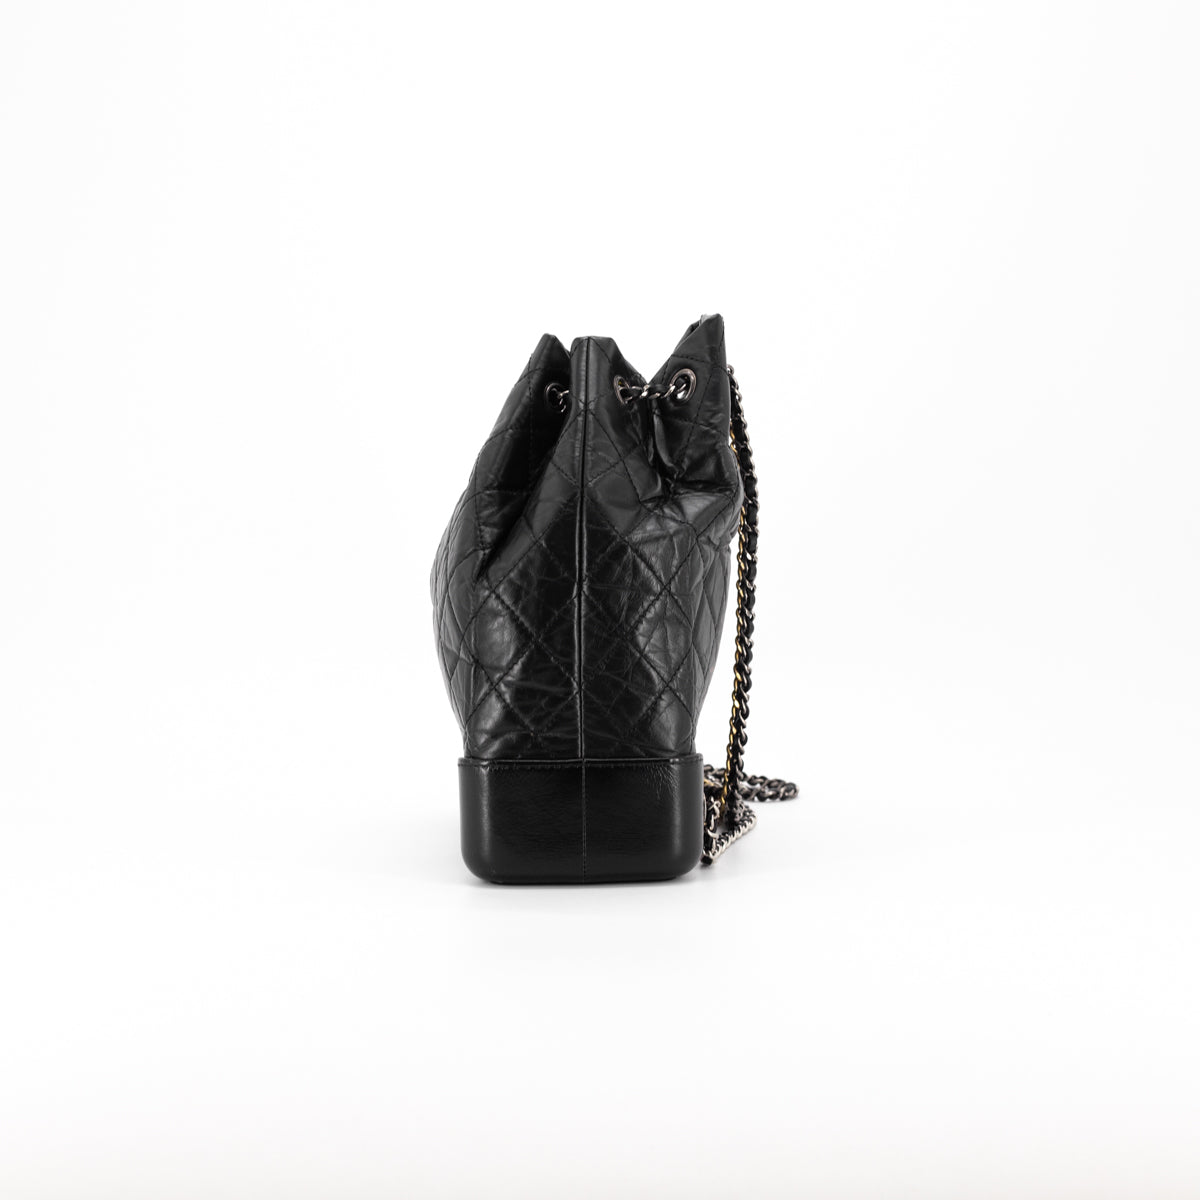 Chanel Gabrielle Medium Backpack Bag Black/Beige - THE PURSE AFFAIR